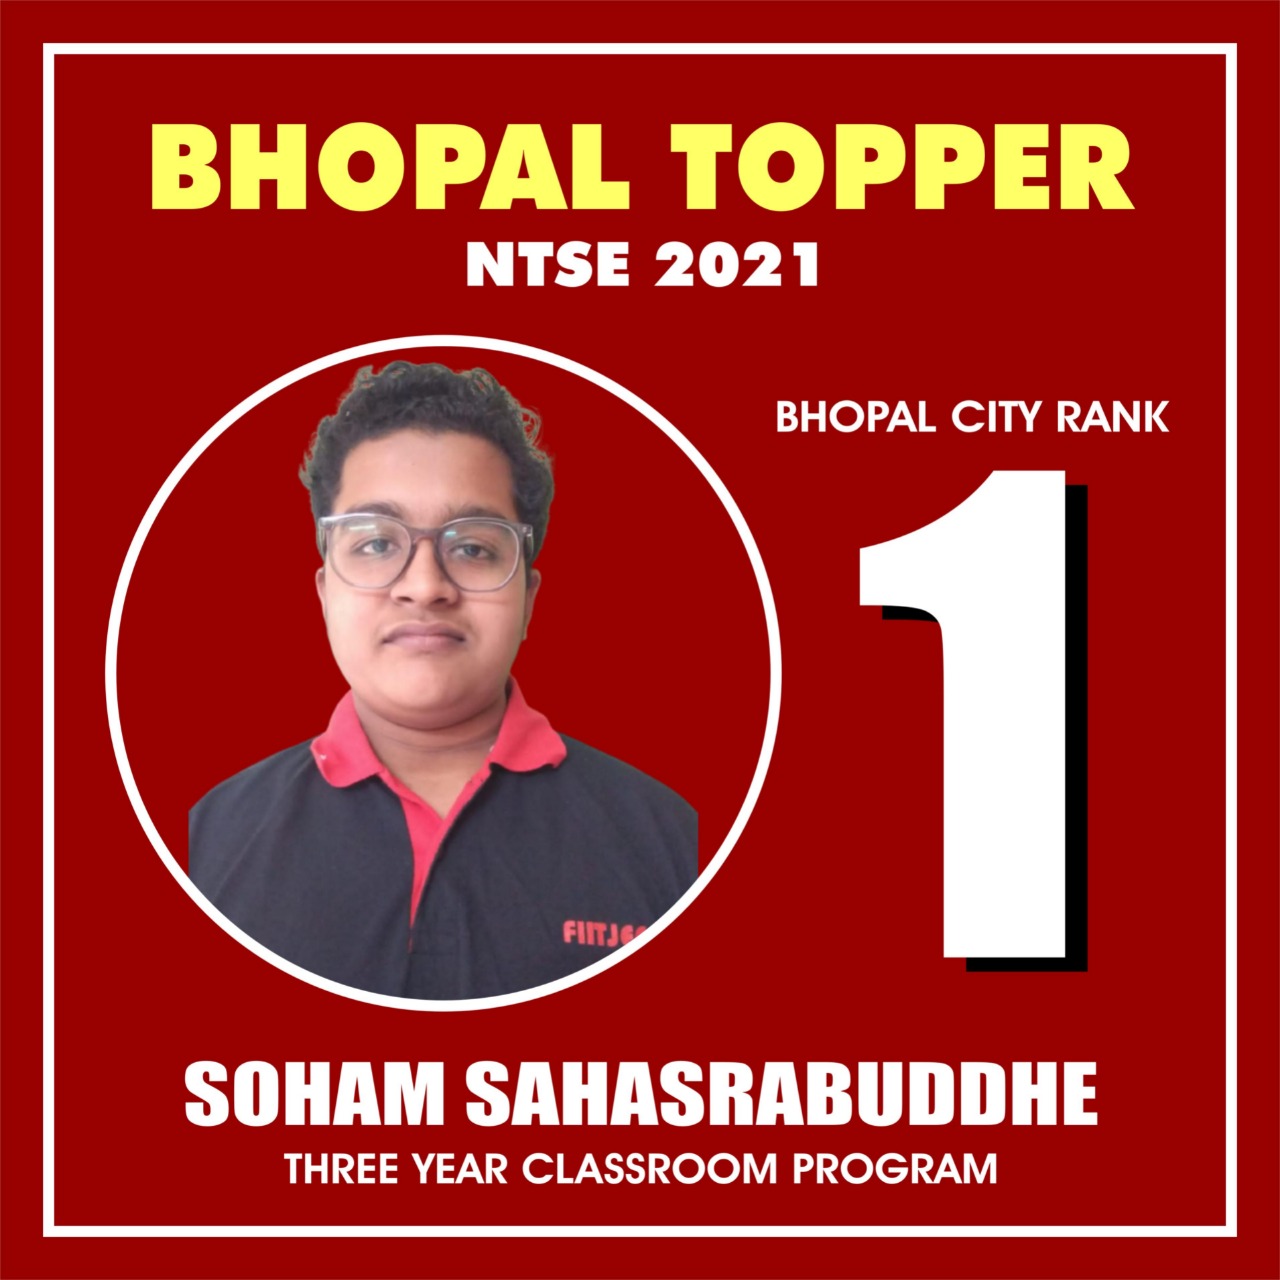 Soham Sahasrabuddhe Bhopal Topper